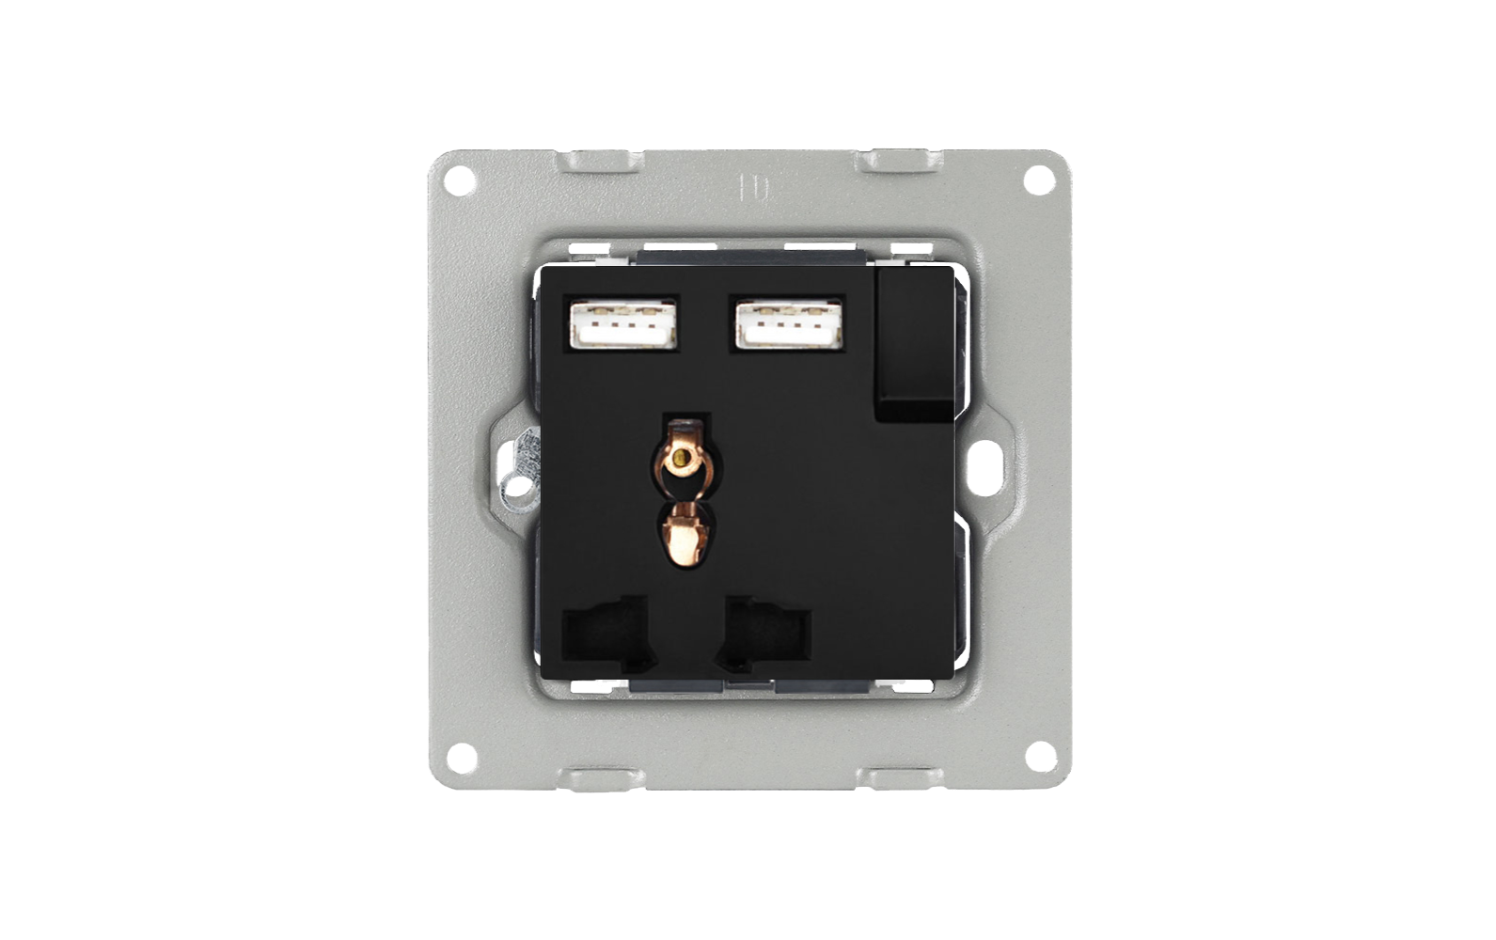 3 Pin'li Evrensel 2 USB Şarj Cihazlı Anahtarlı Priz - Siyah